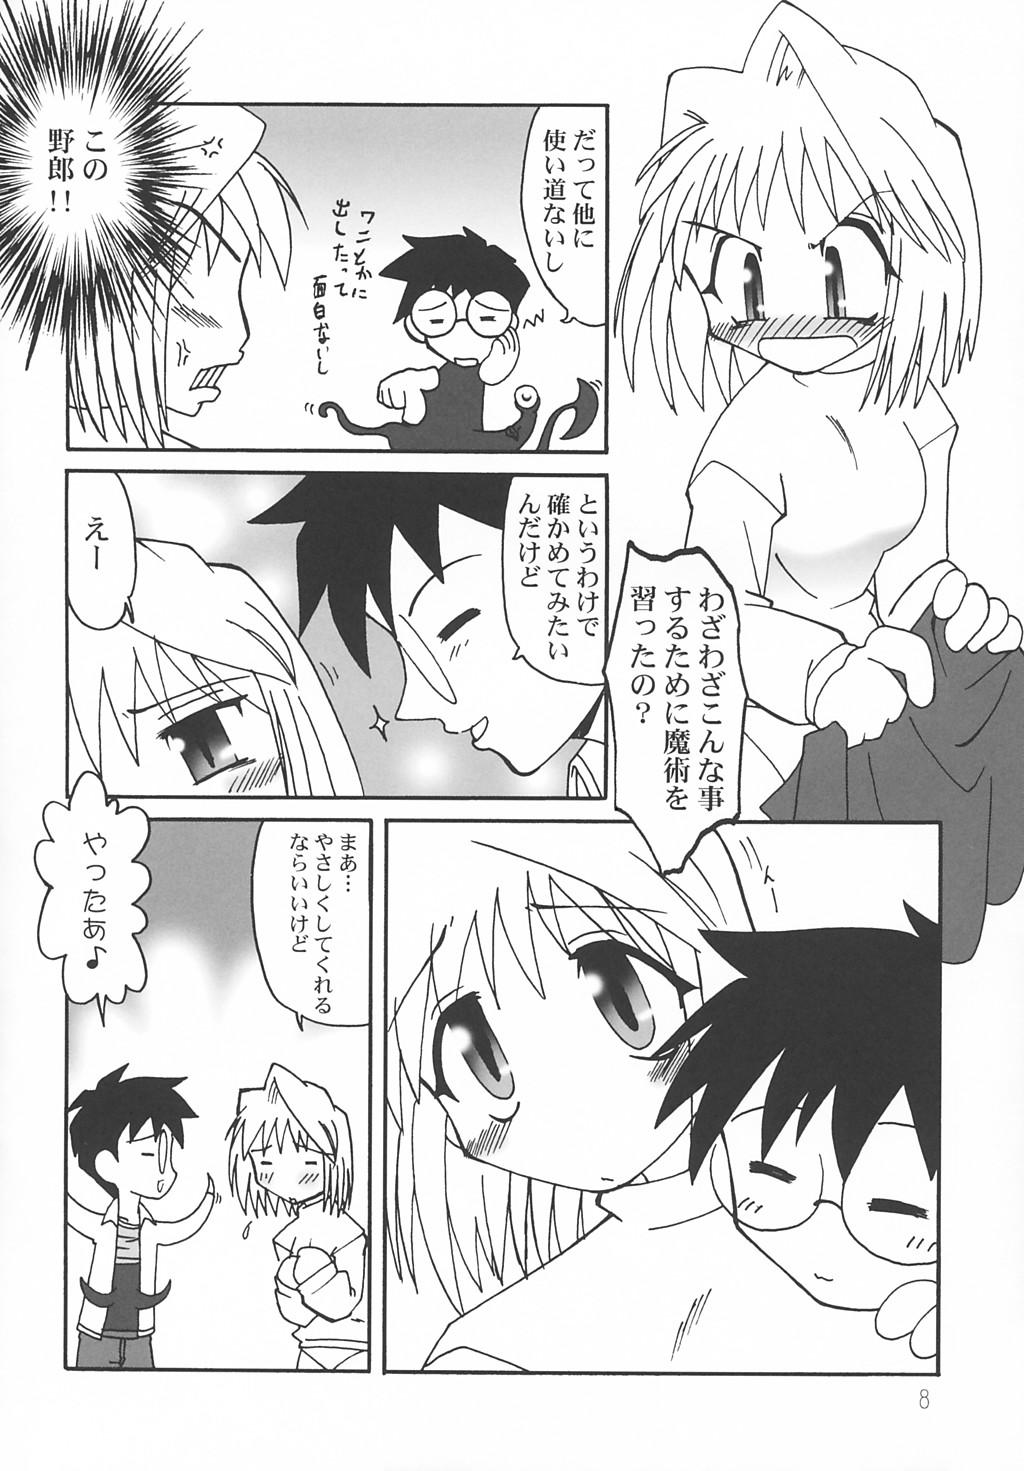 Nerd Nanaya no Mori+ - Tsukihime Perverted - Page 7